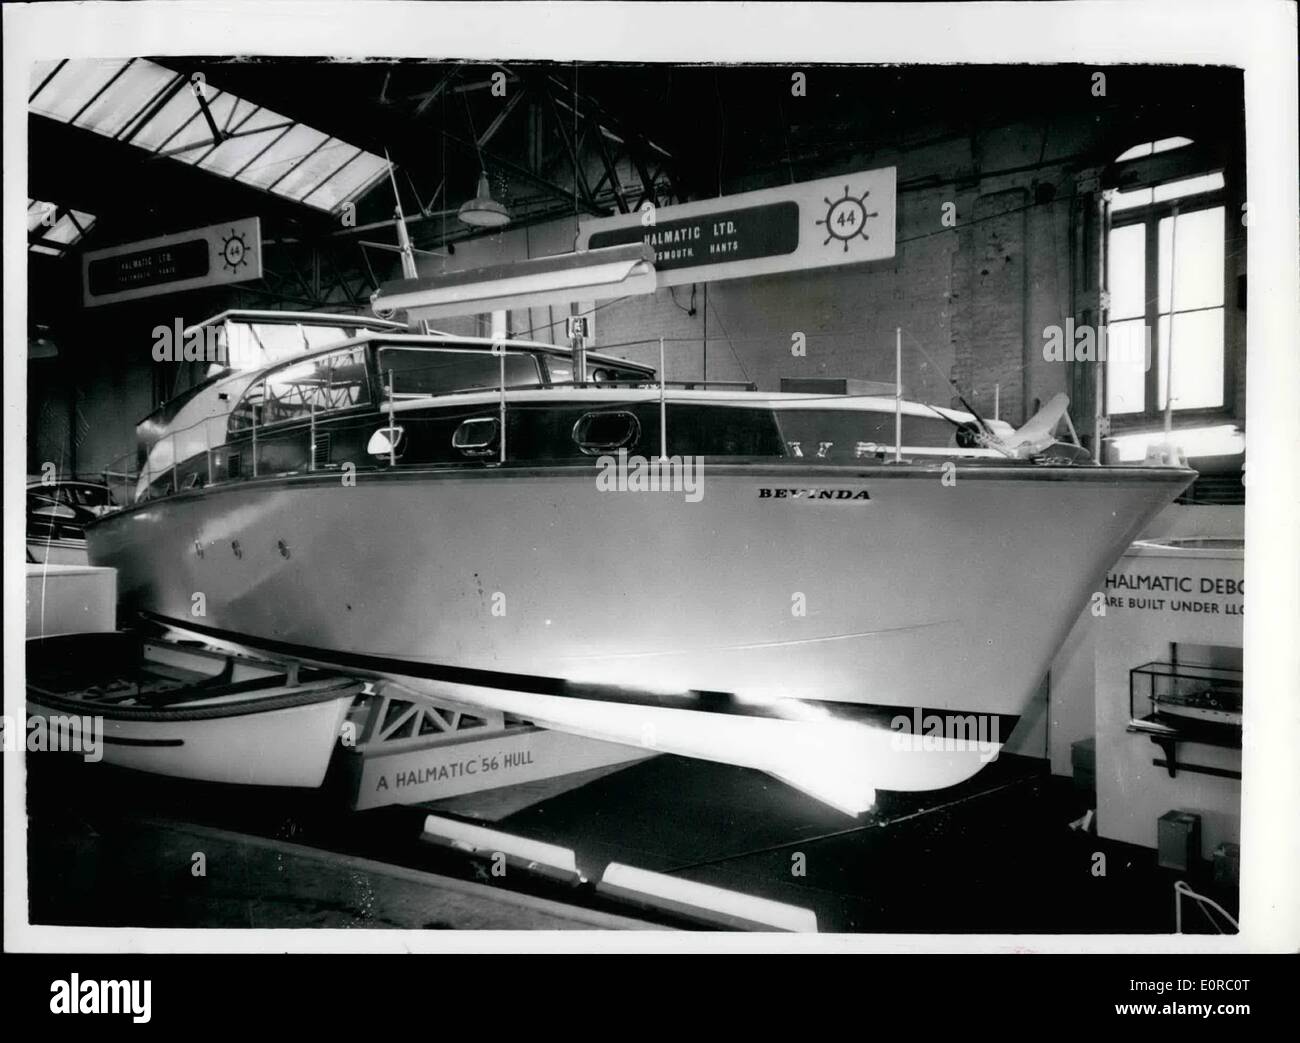 12 décembre 1958 - salon nautique national à Olympia. La plus grande coque en plastique du monde. Photos vues générales du plus grand bateau à coque en plastique du monde - le yacht ''Bevinda''' 56 pieds de long - coque simple moulée - renforcée de fibre de verre. Elle coûte environ 30,000 $ et est équipée de deux moteurs diesel à 160 b.h.p. Elle est la propriété de M. Stephe O'Flaherty, un homme d'affaires de Dublin. Banque D'Images